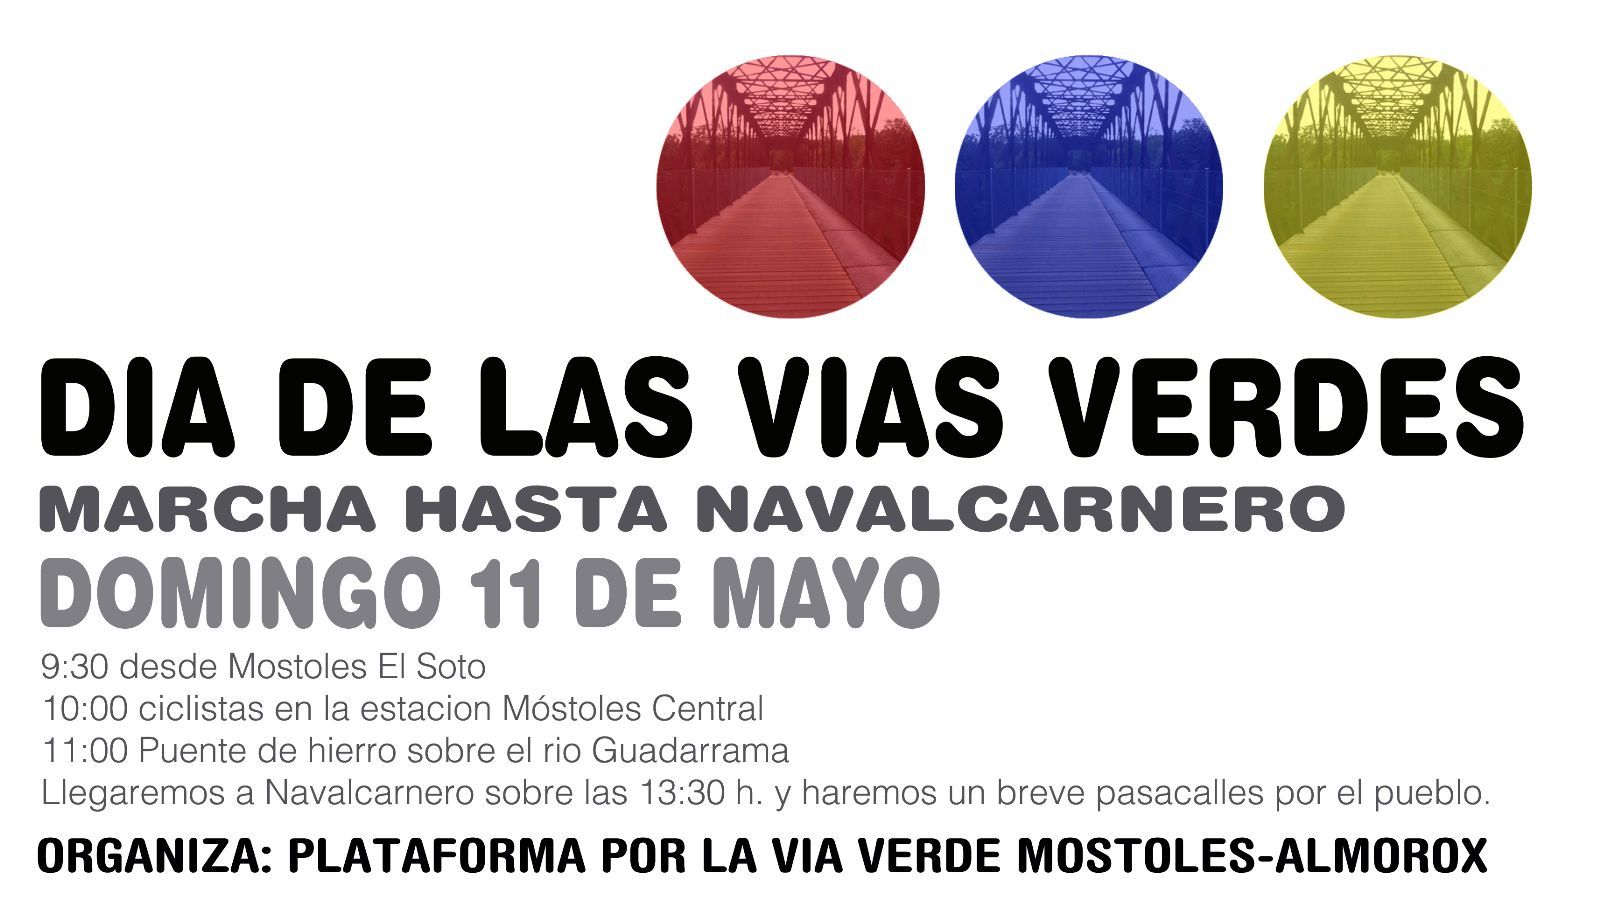 Marcha hasta Navalcarnero por la Va Verde Mstoles-Almorox (Madrid)